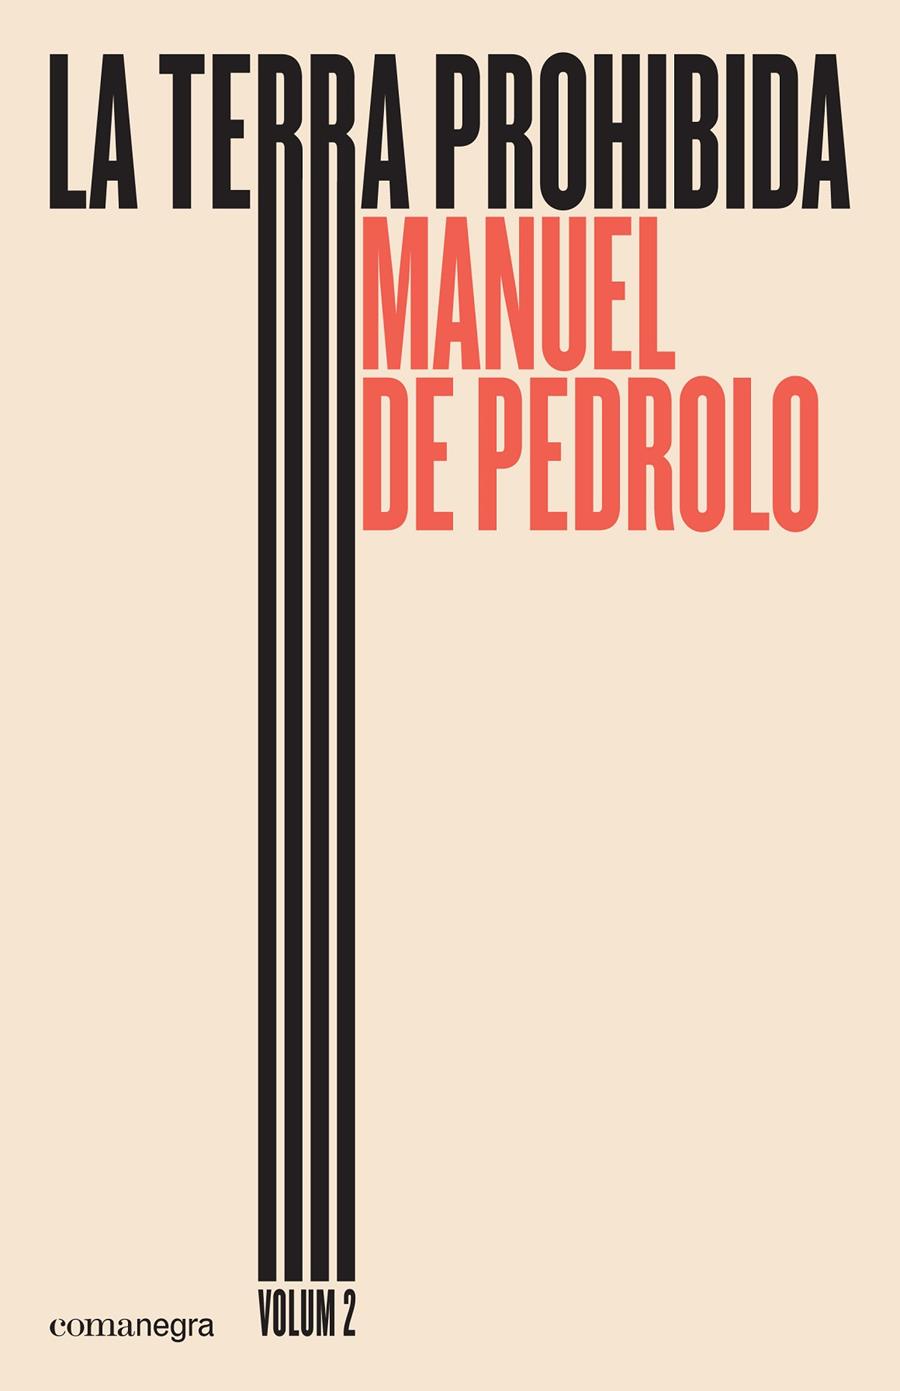 La terra prohibida (volum 2) | de Pedrolo Molina, Manuel | Cooperativa autogestionària